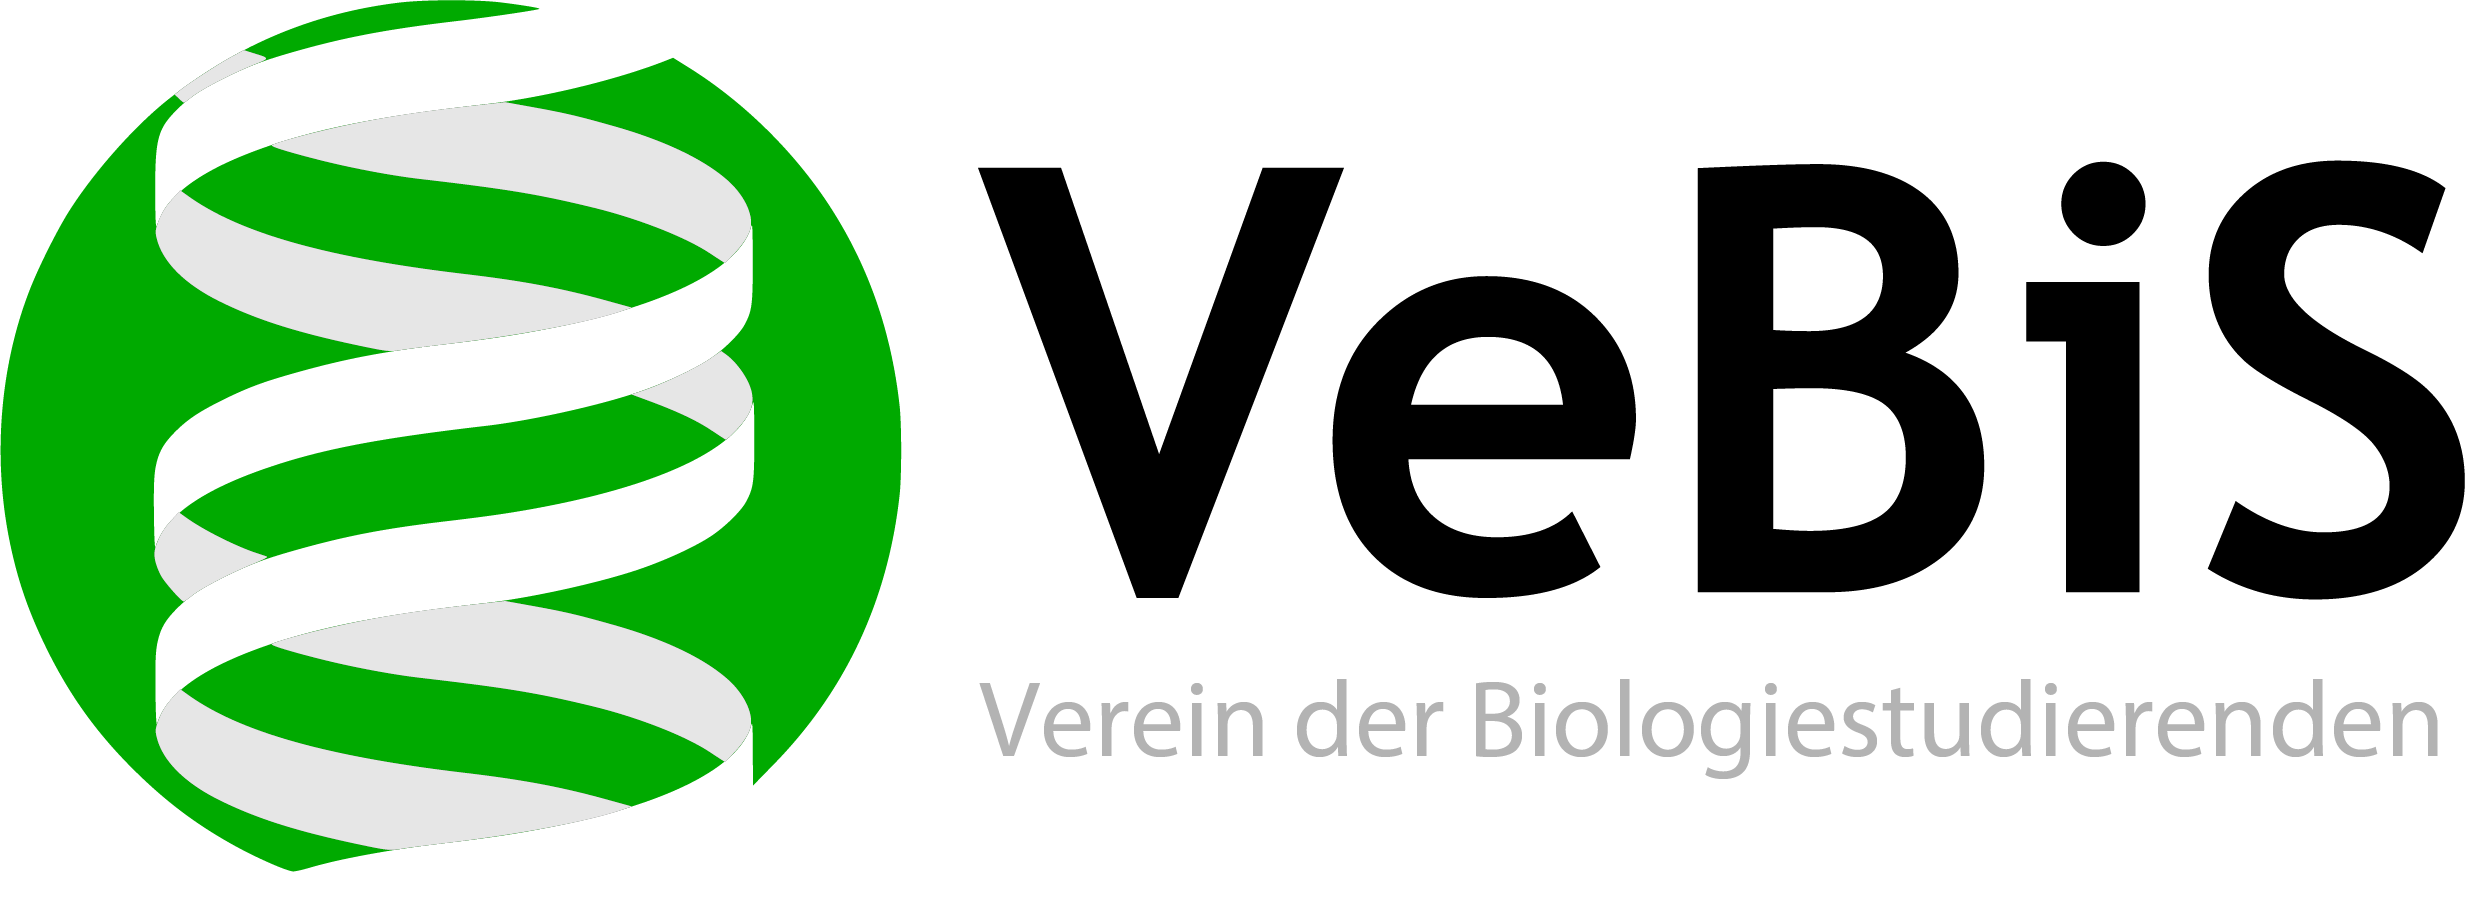 Vebis logo 2015